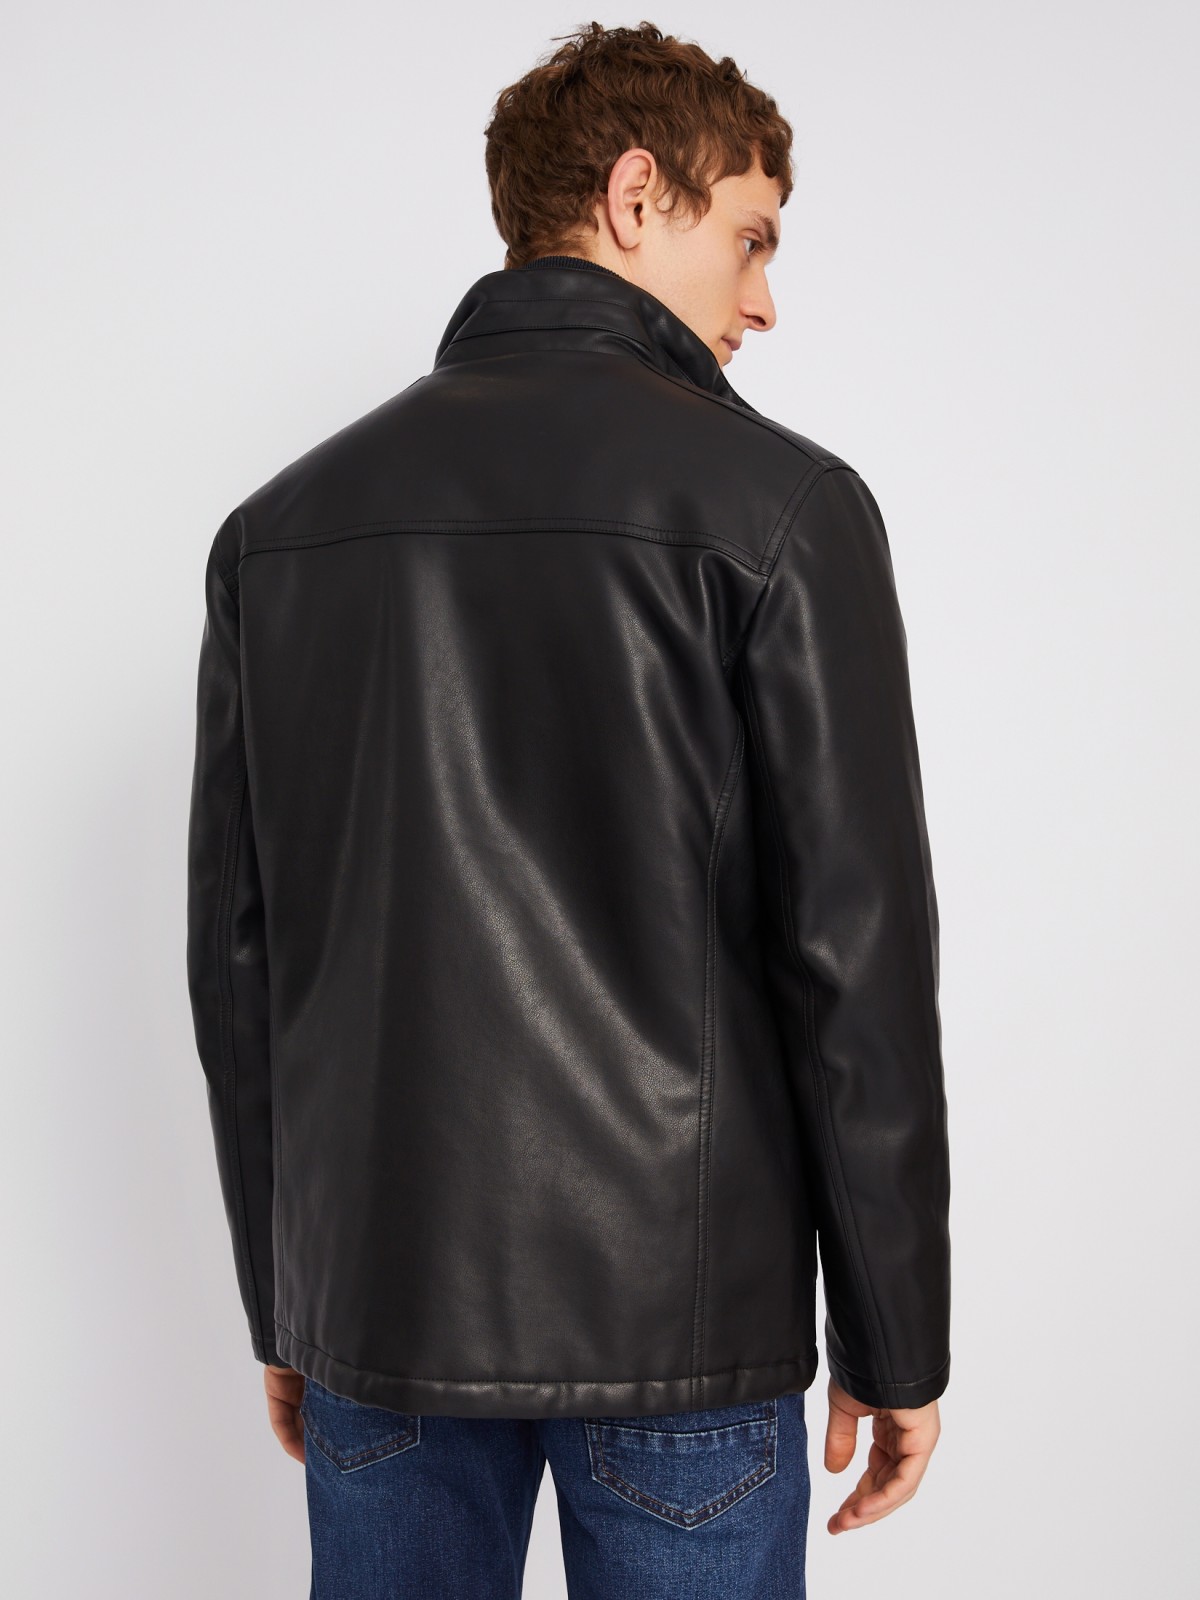 Утеплённая куртка из экокожи на синтепоне с воротником-стойкой zolla 013335102044, цвет черный, размер XXXL - фото 5